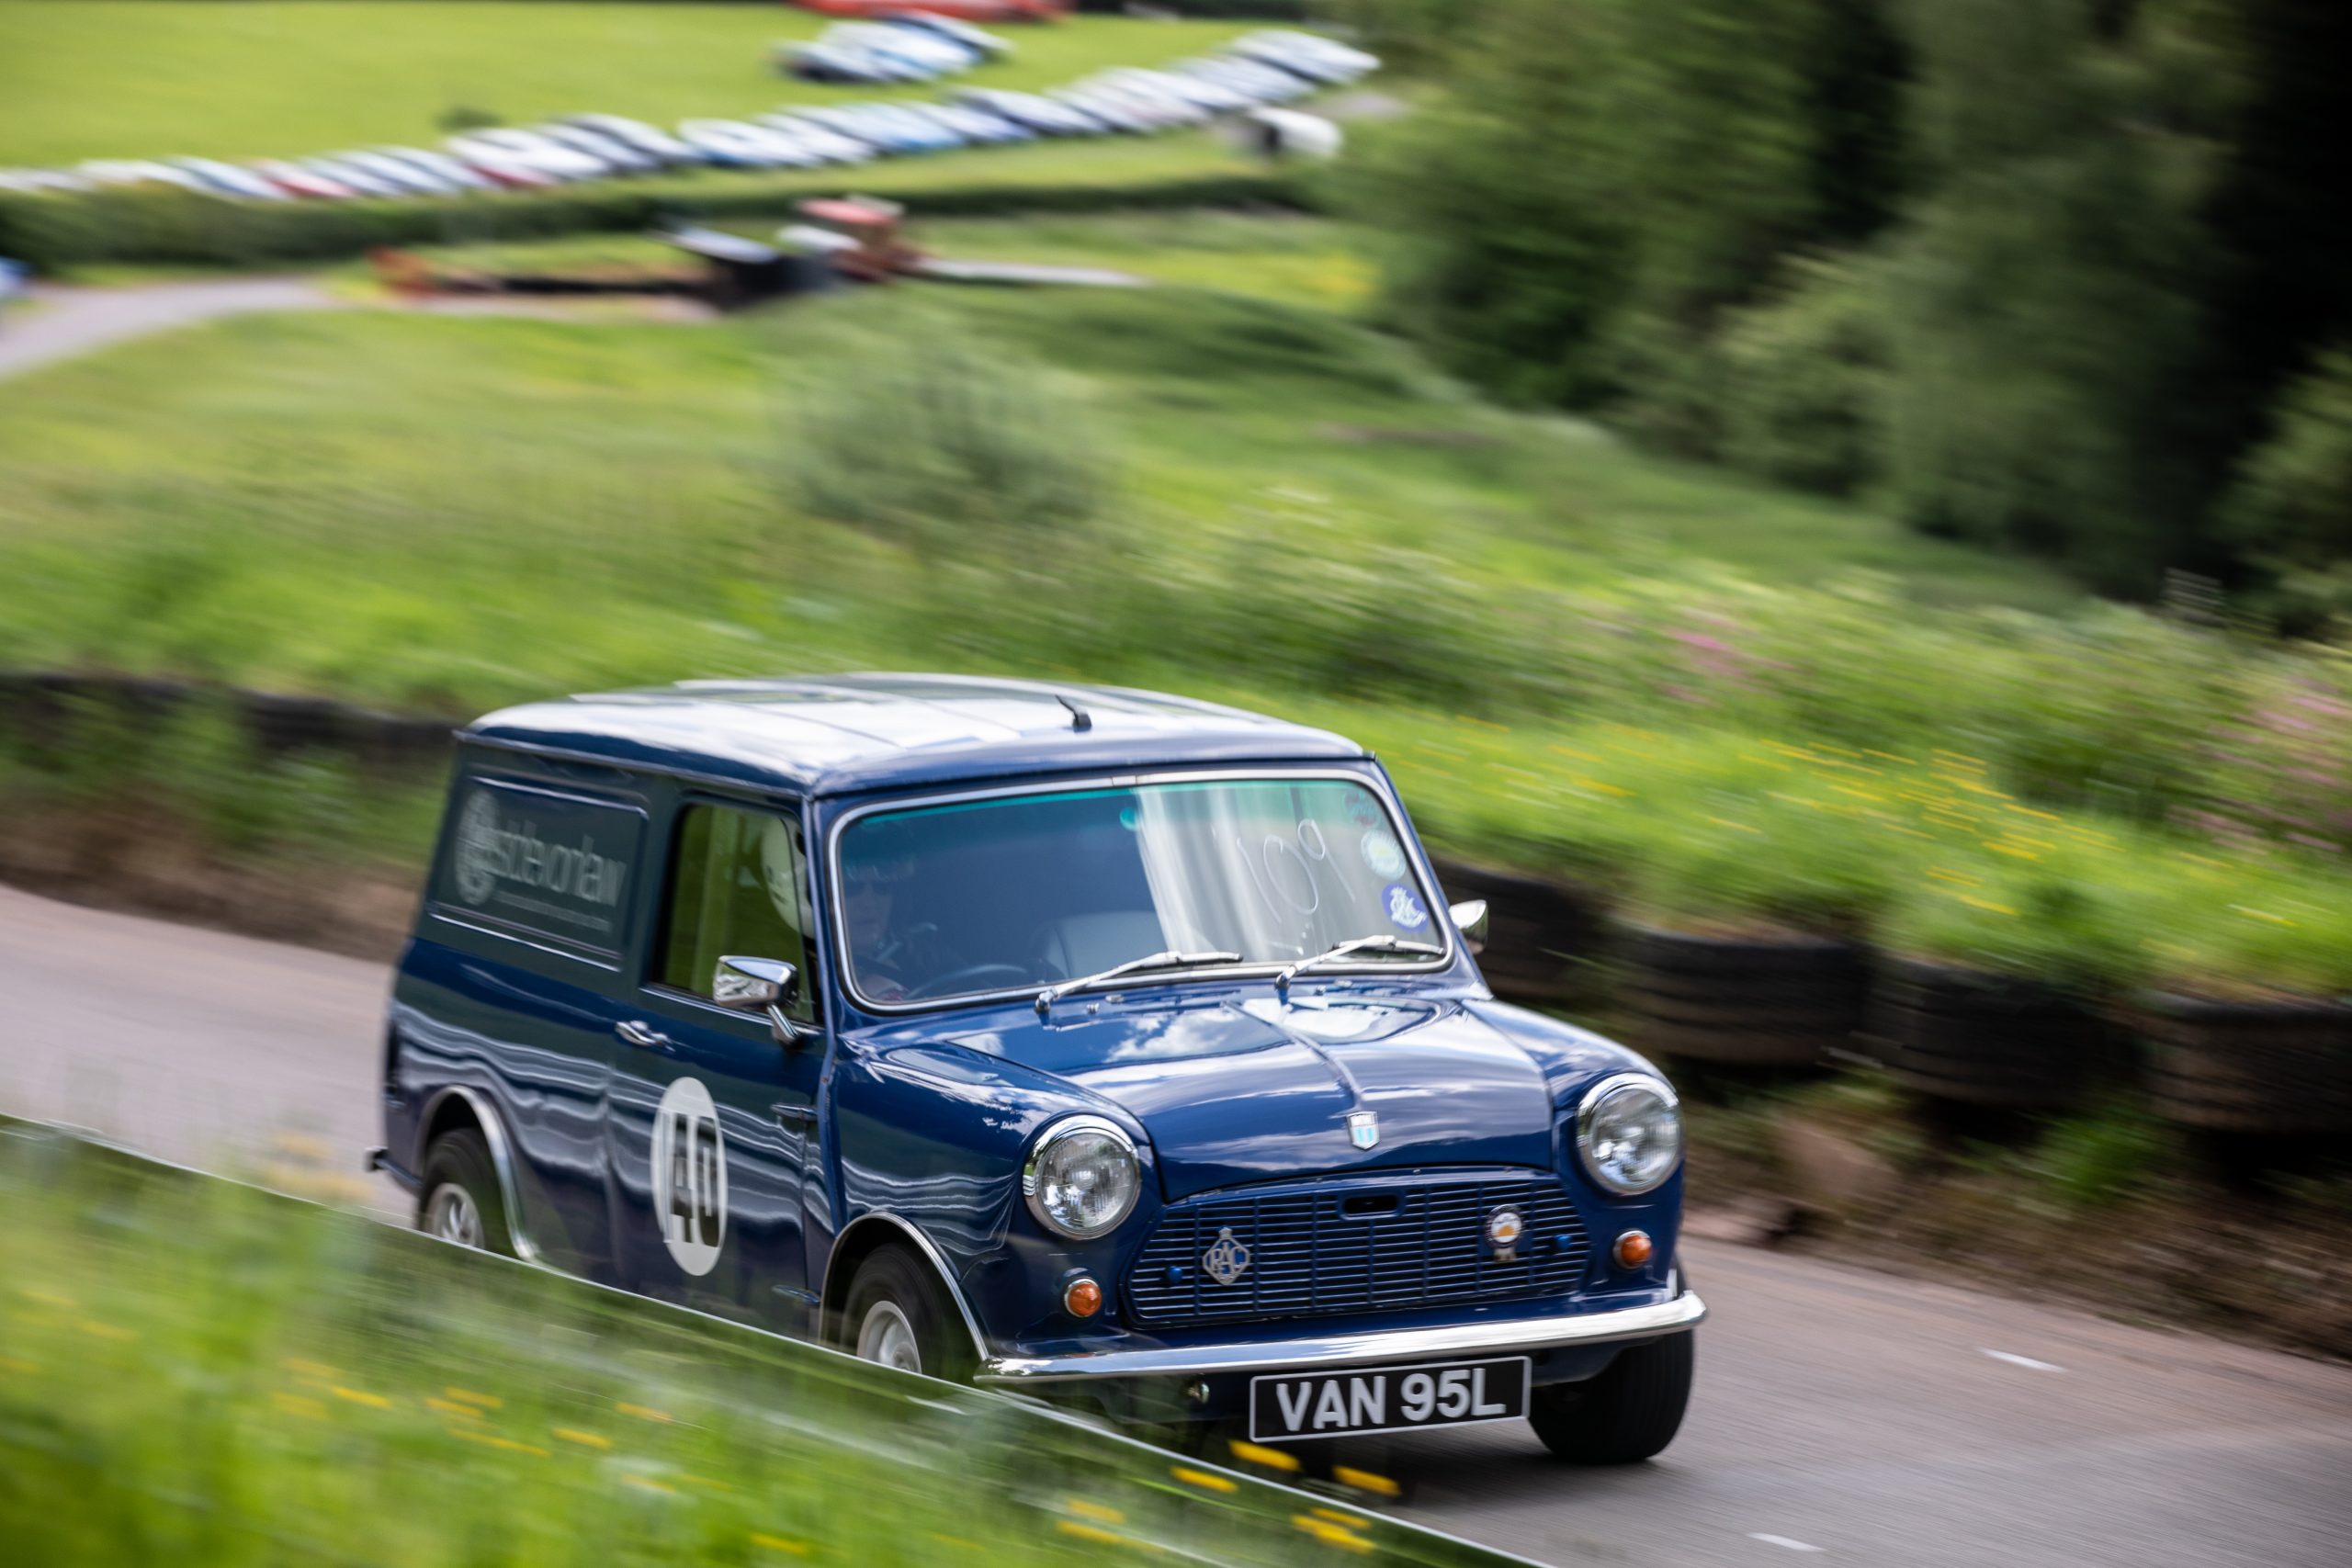 Ian Hunt's Mini van racer